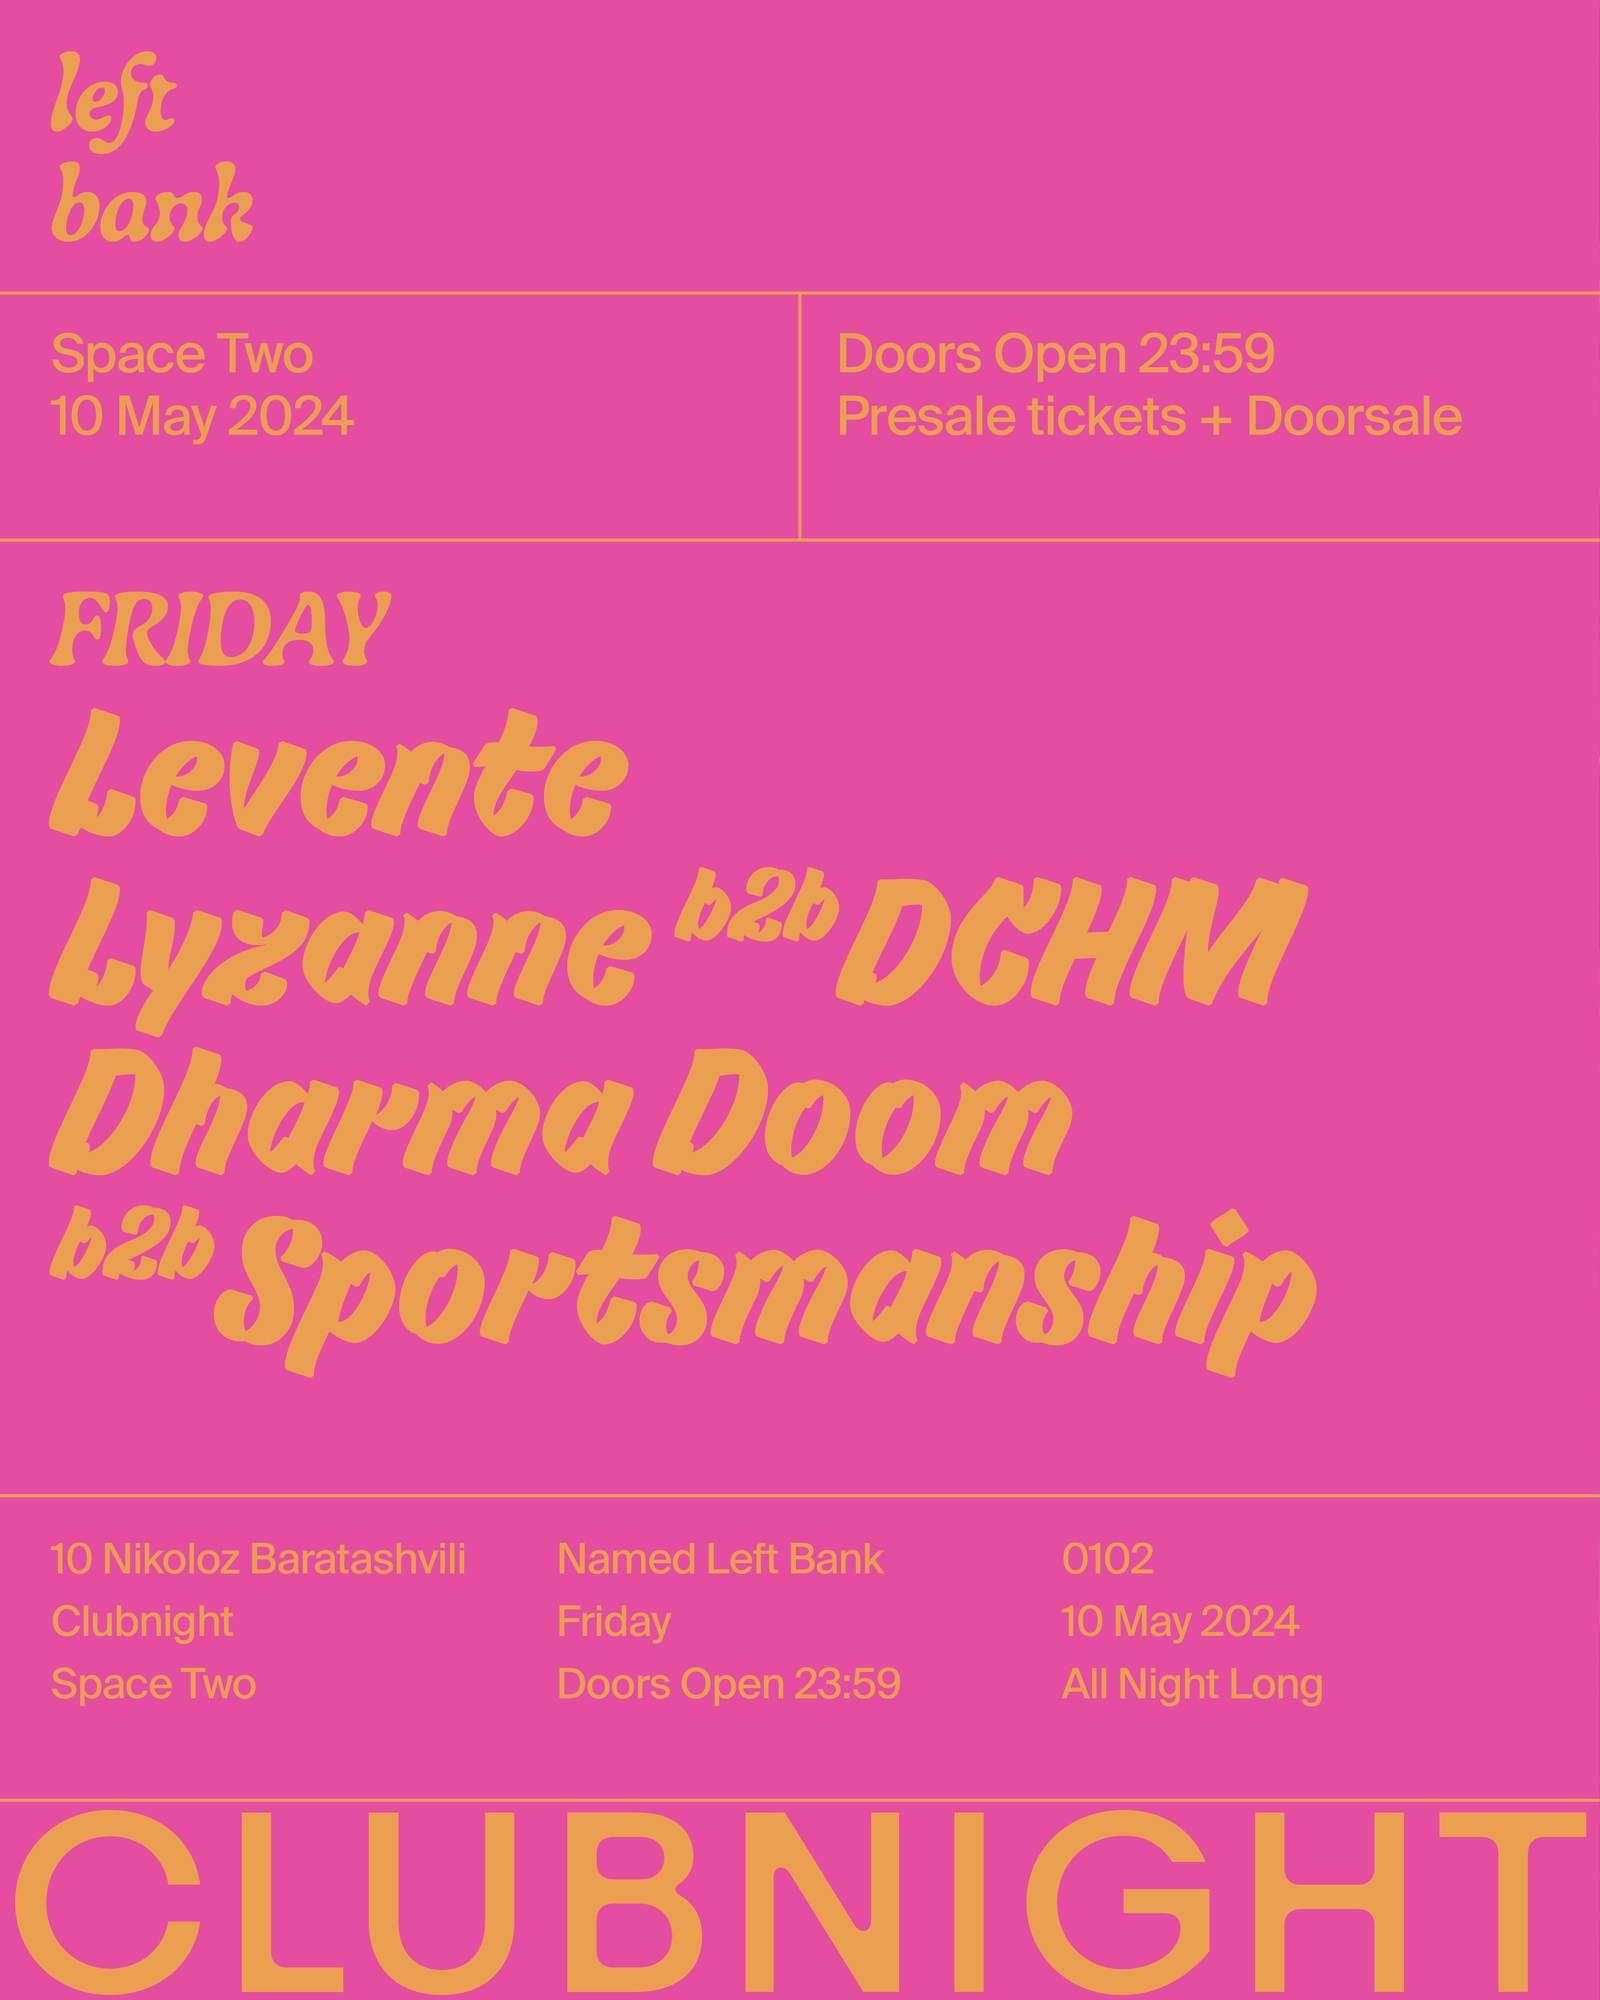 Left Bank Clubnight: lyzanne b2b DCHM • Levente • Dharma Doom b2b Sportsmanship - Página frontal